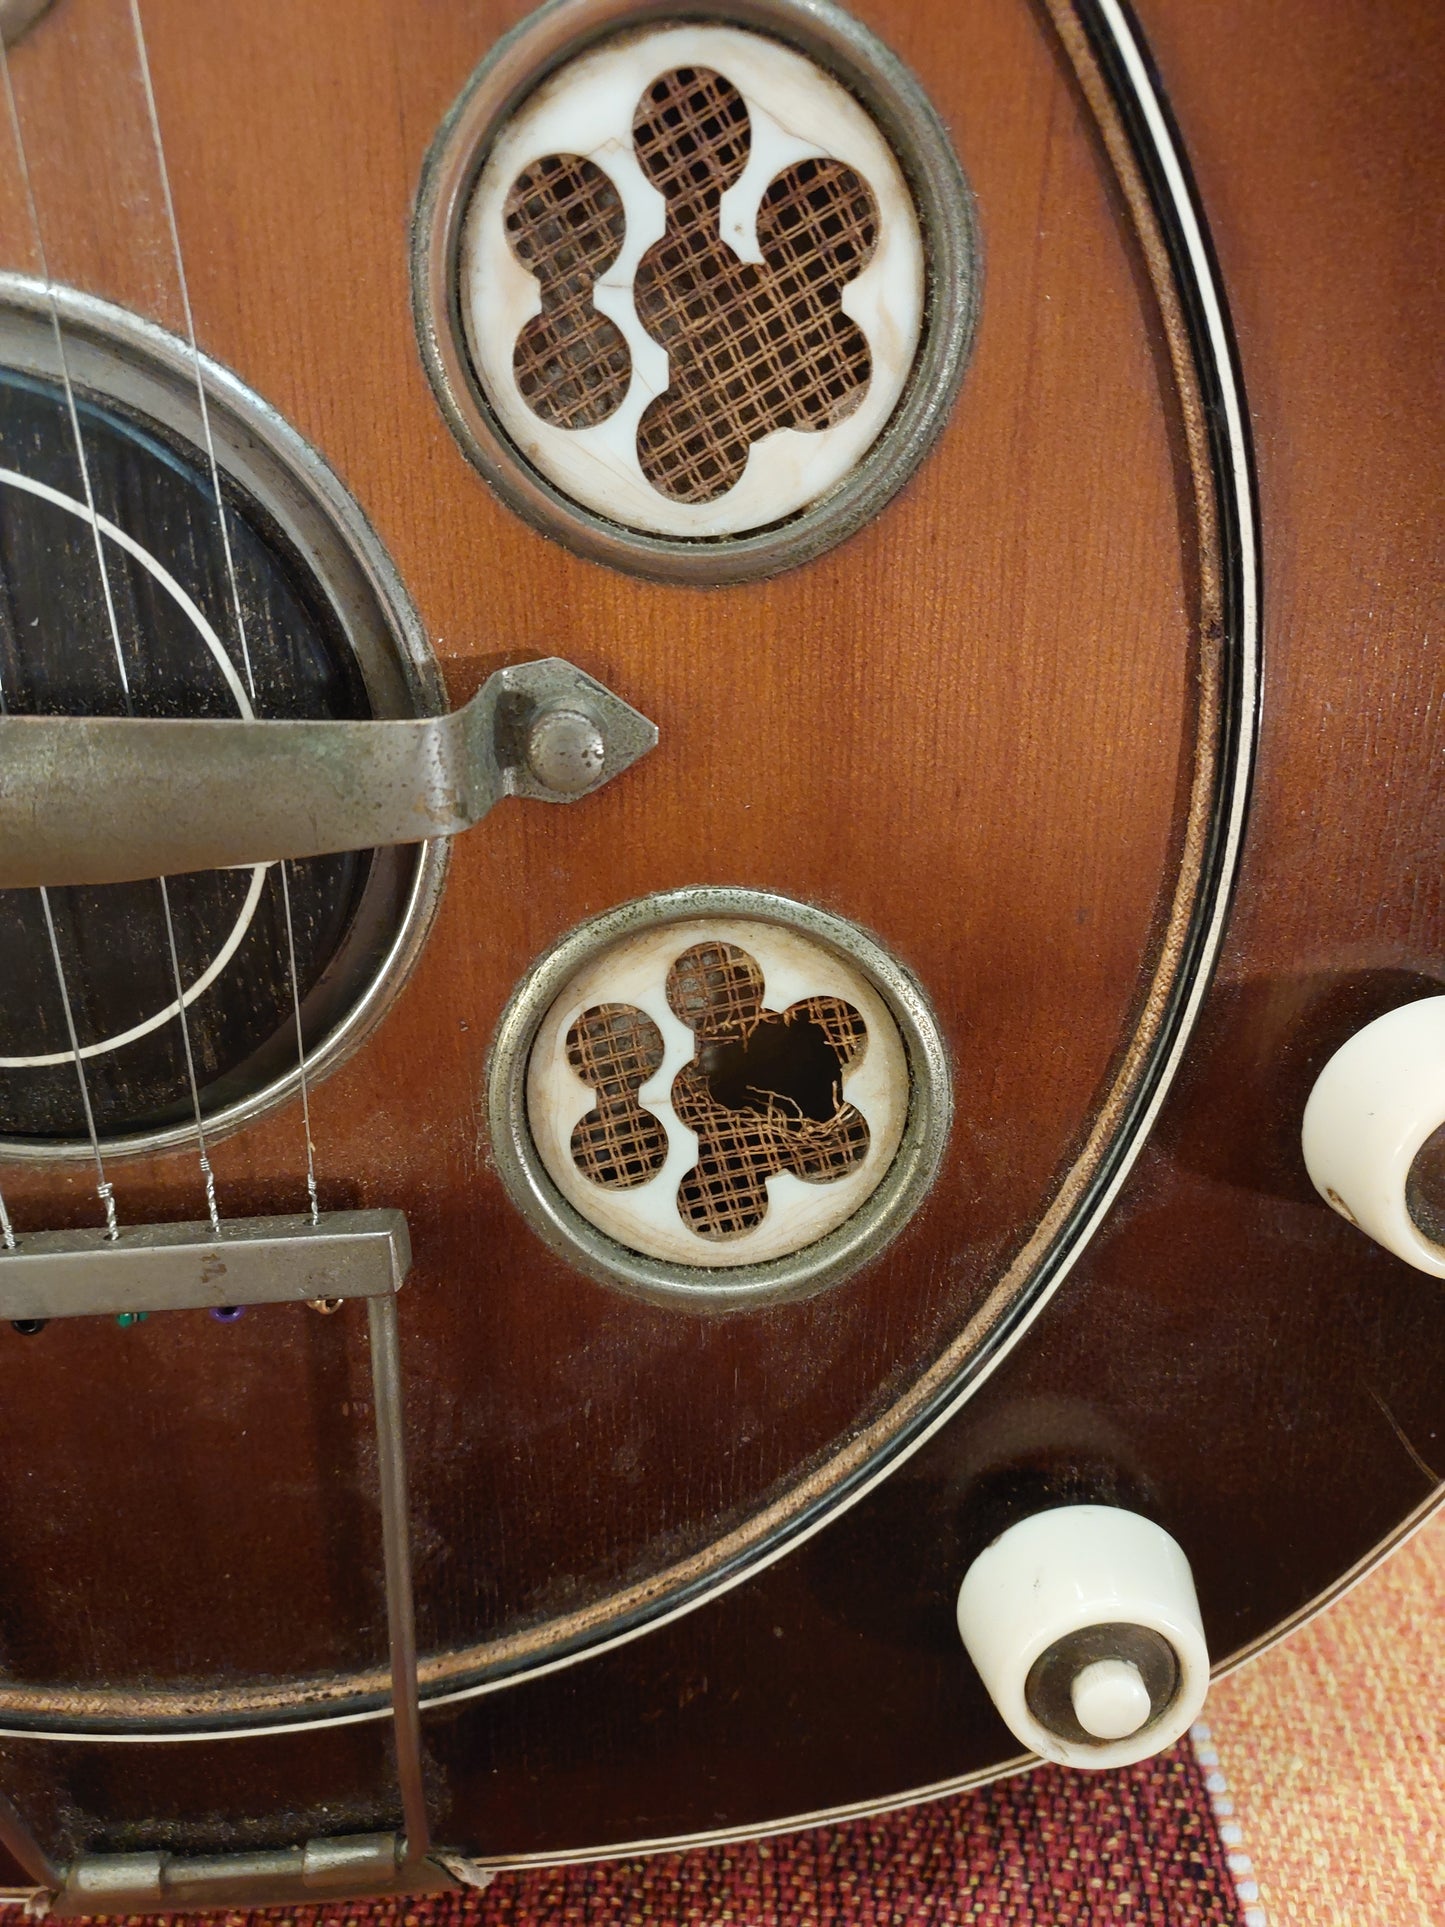 (D2) 1950s 6-string Del Vecchio acoustic/electric resonator guitar (brown sunburst)